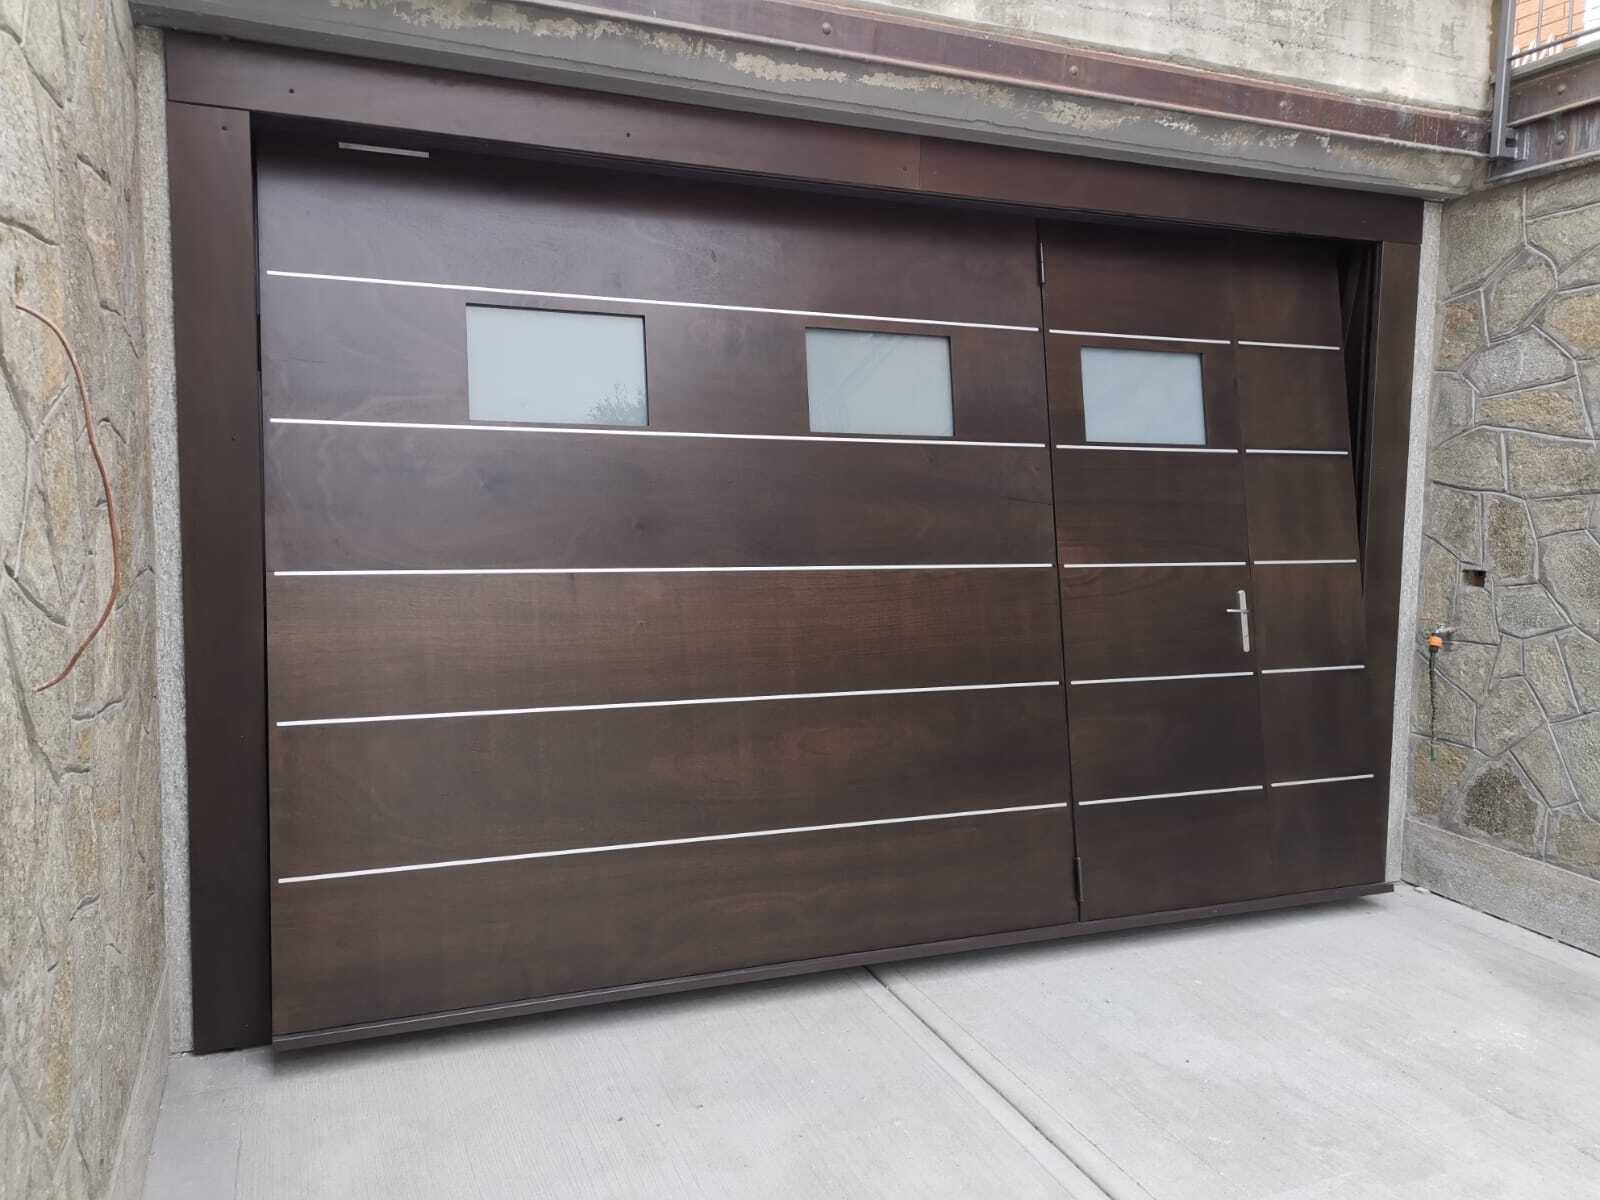 Installazione di SecureMe, porta basculante di sicurezza per garage in multistrato marino, legno, dotata di oblò e portina pedonale